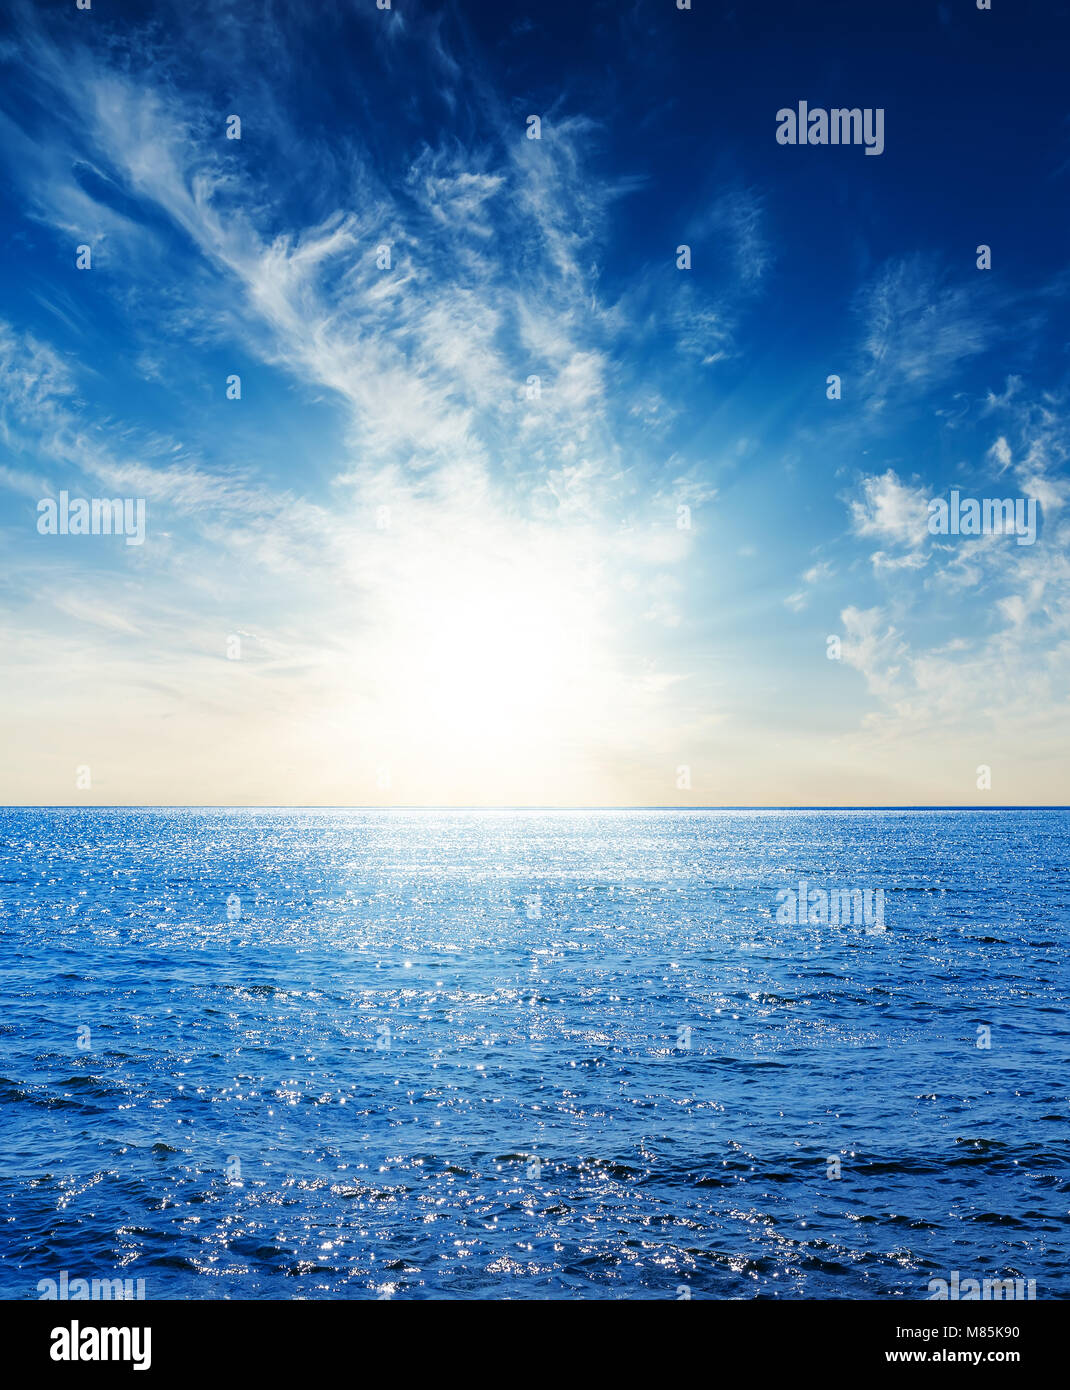 Le bleu foncé de la mer et du ciel avec nuages dans le coucher du soleil Banque D'Images